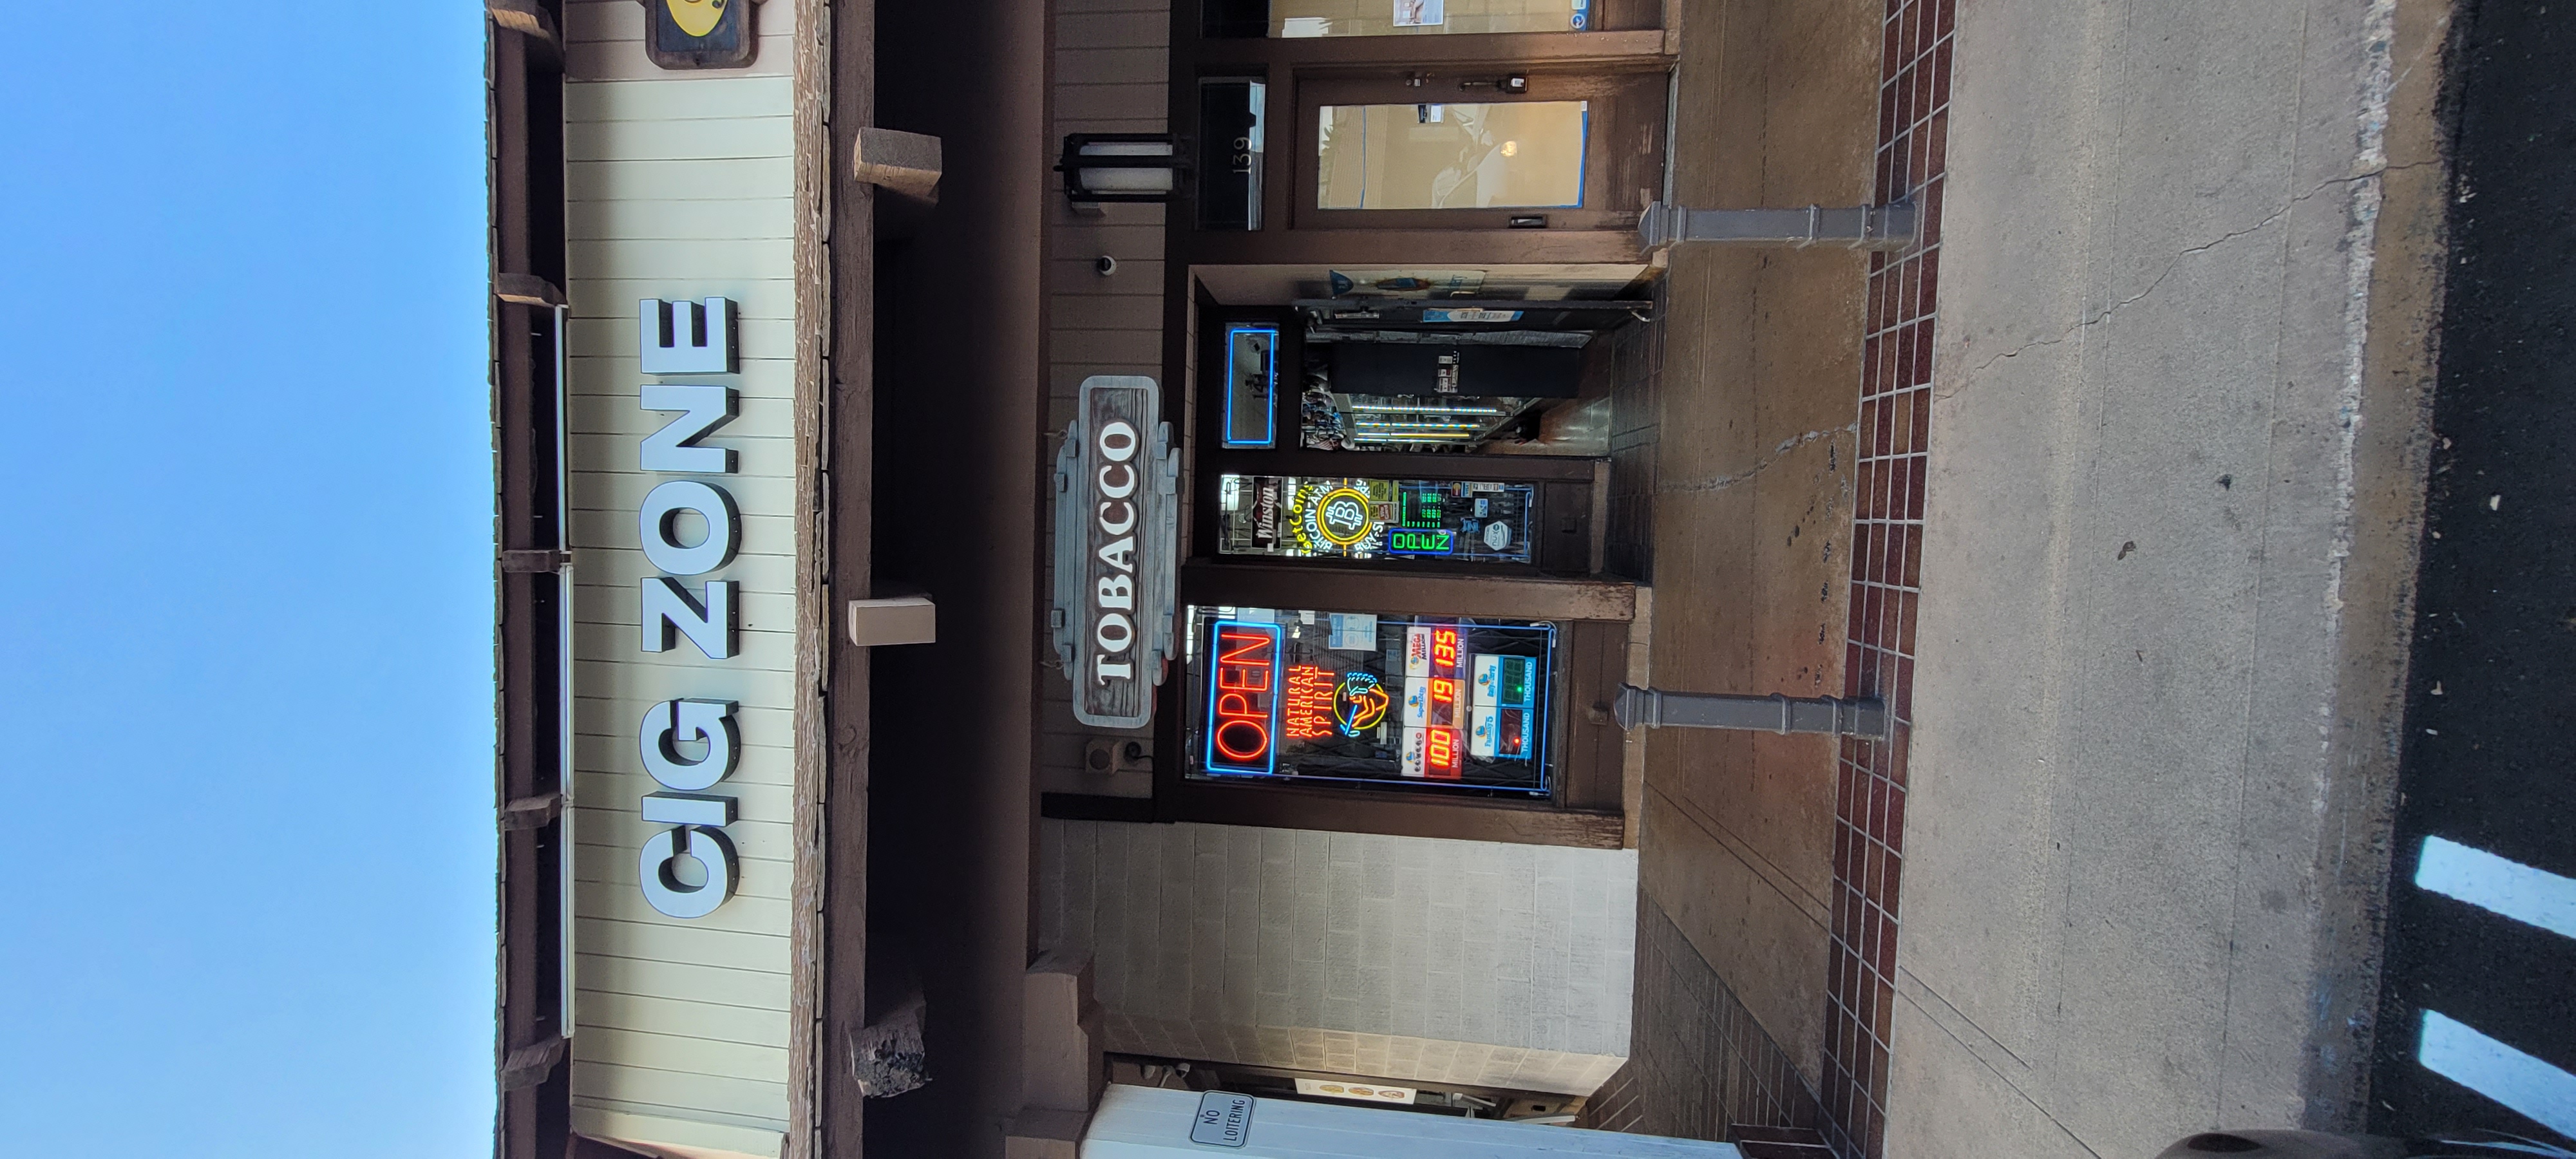 Getcoins - Bitcoin ATM - Inside of Cig Zone in Pasadena, California